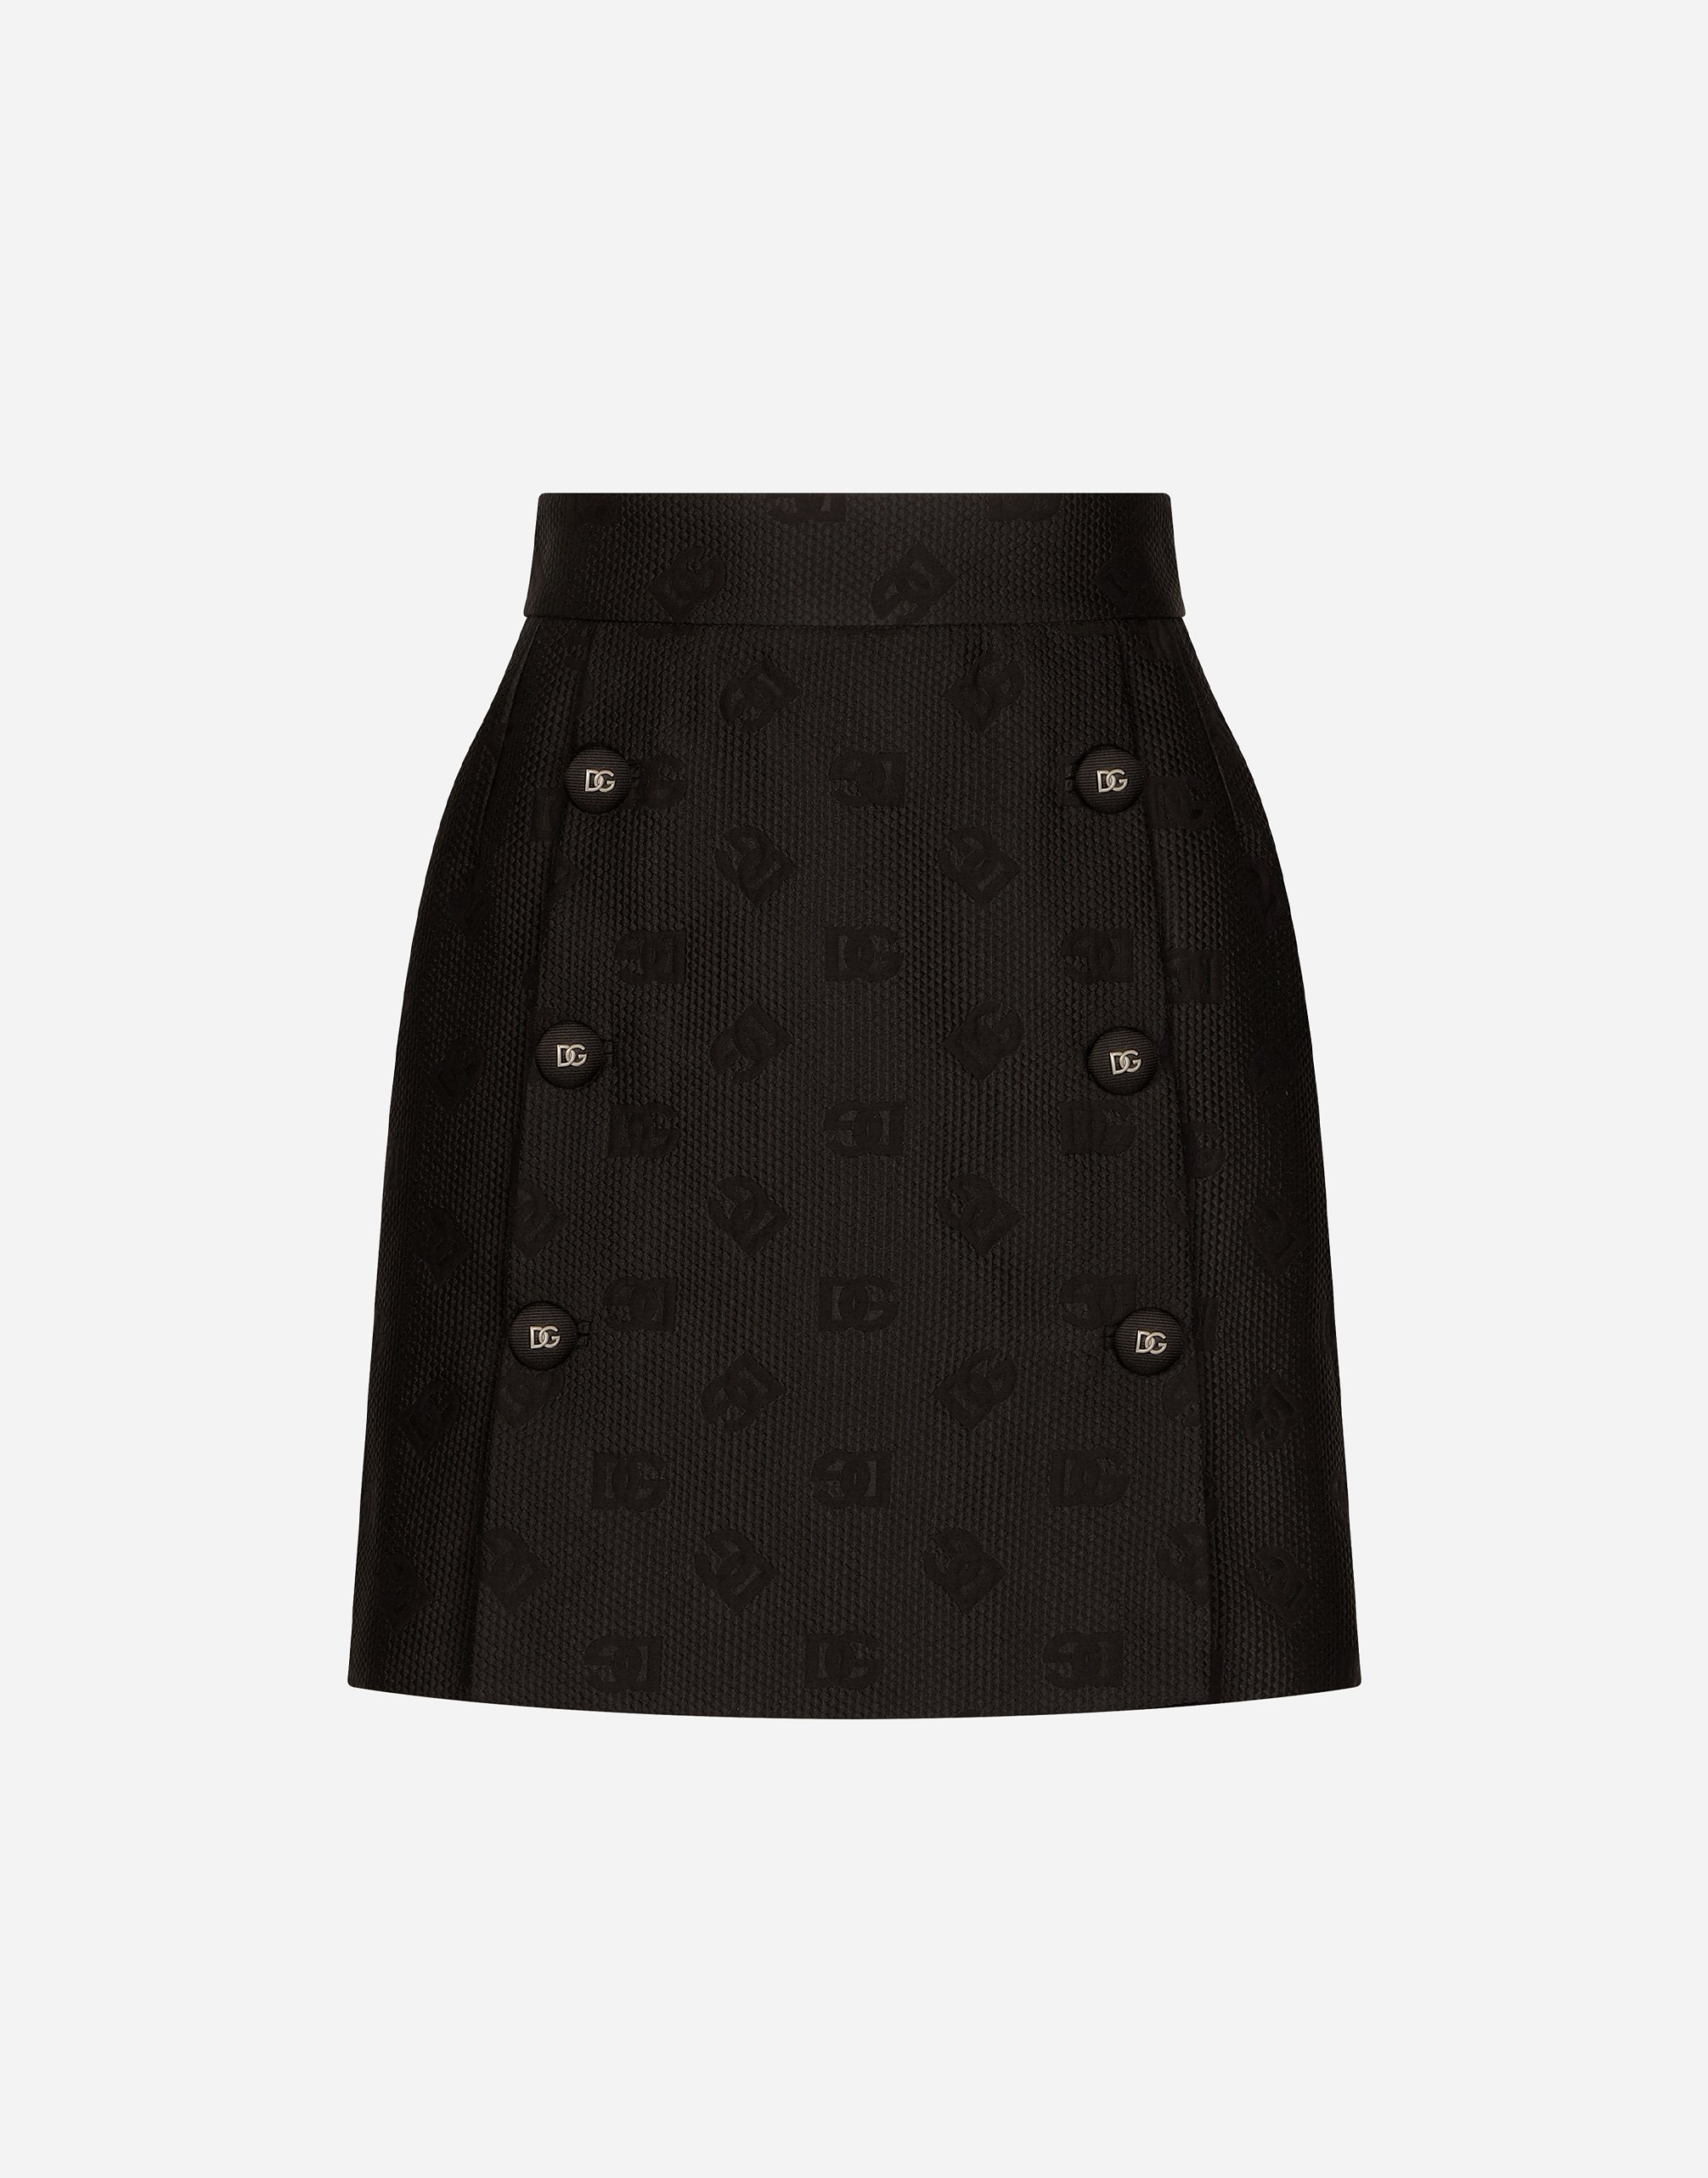 Dolce & Gabbana Jacquard Miniskirt With All-over Dg Logo In Black